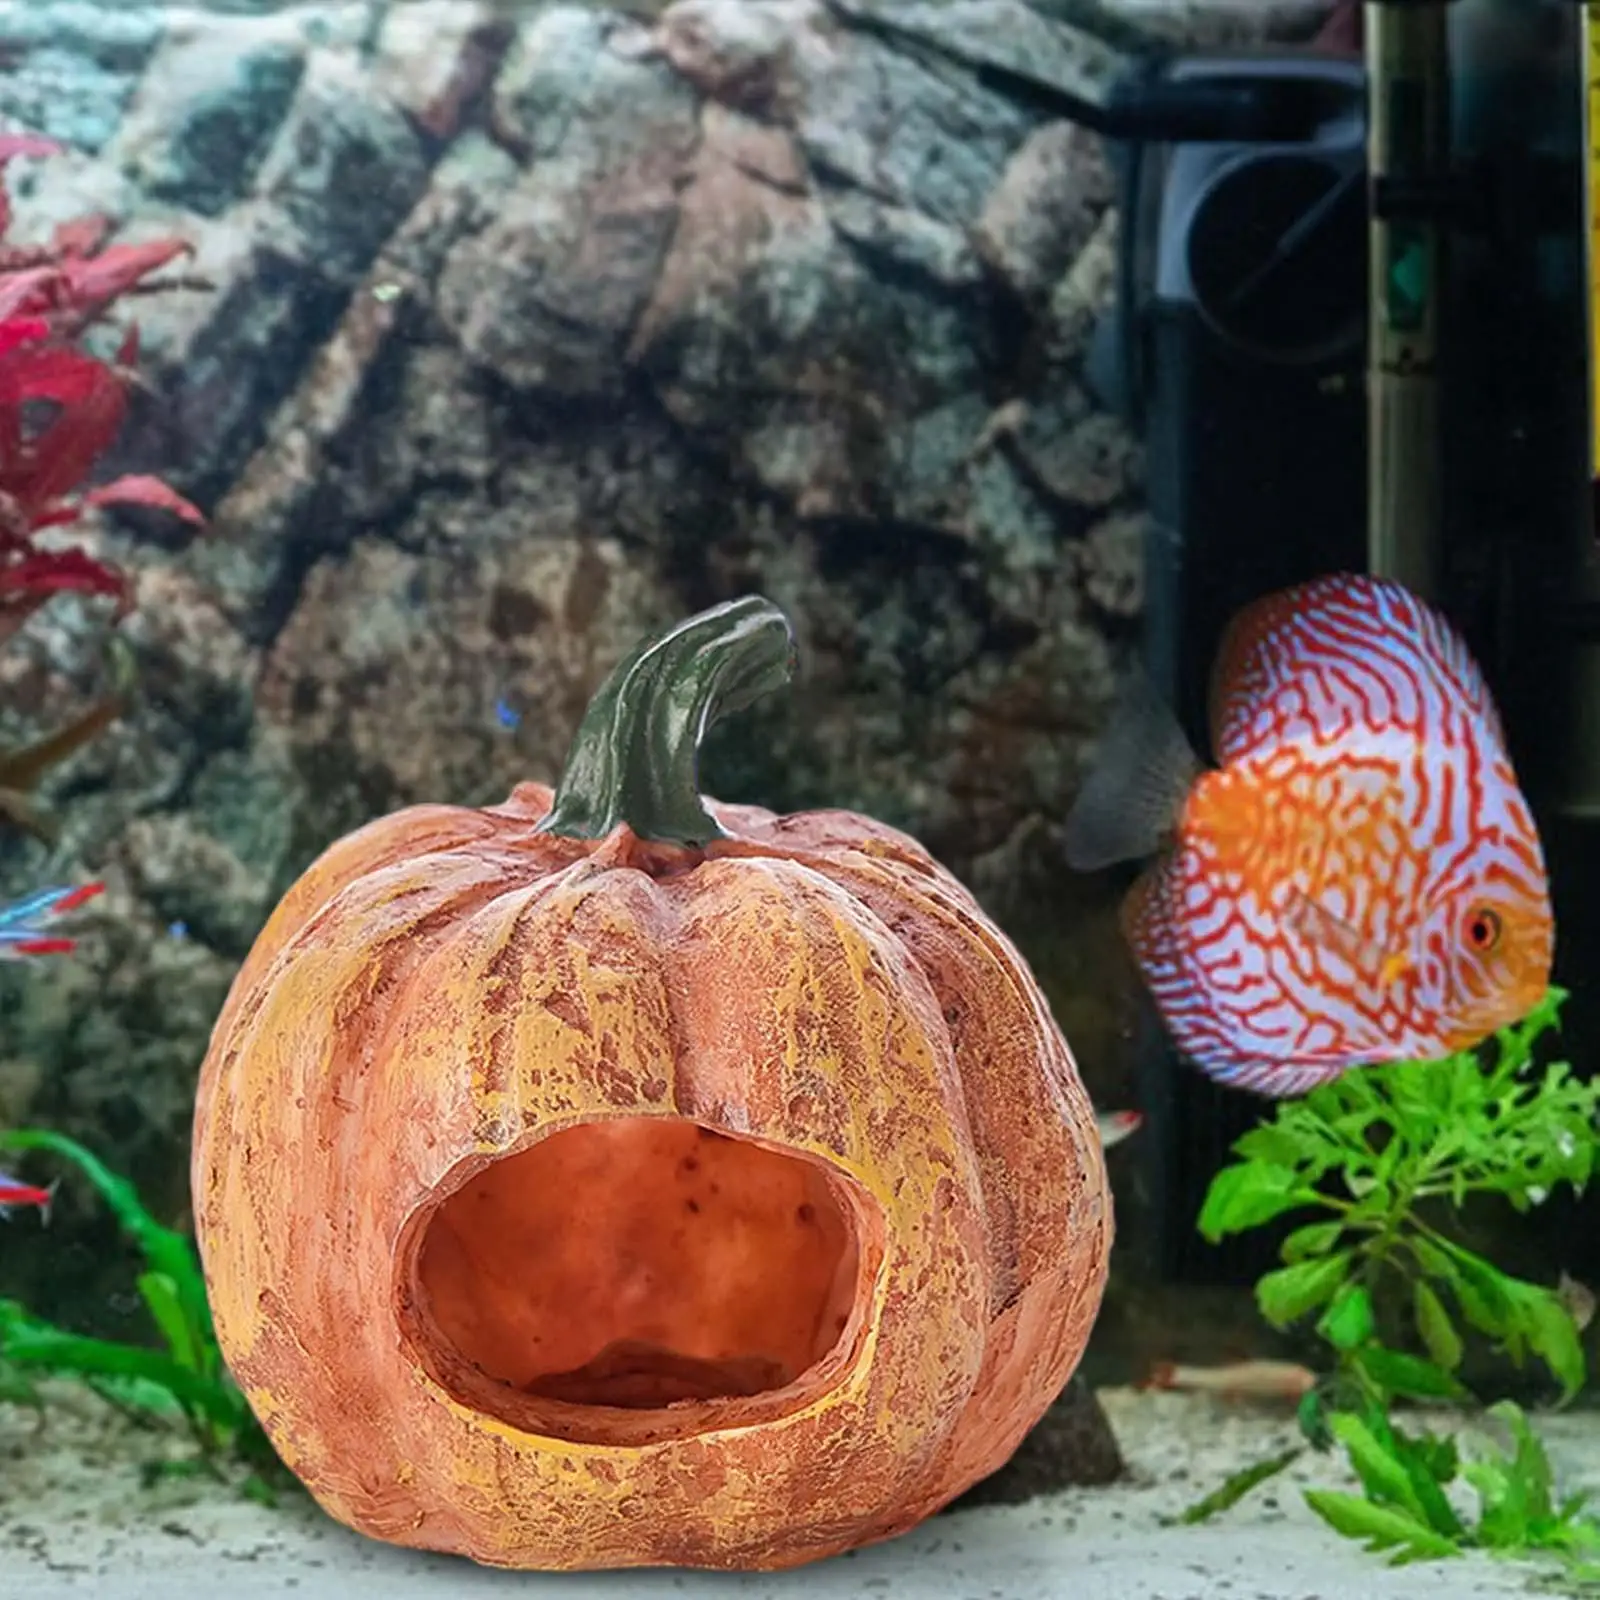 Pumpkin Fish Tank Decor Pumpkin Fish Cave Artificial Durable Fish Hide Cave for Aquarium Tabletop Fish Tank Turtles Aquatic Pets